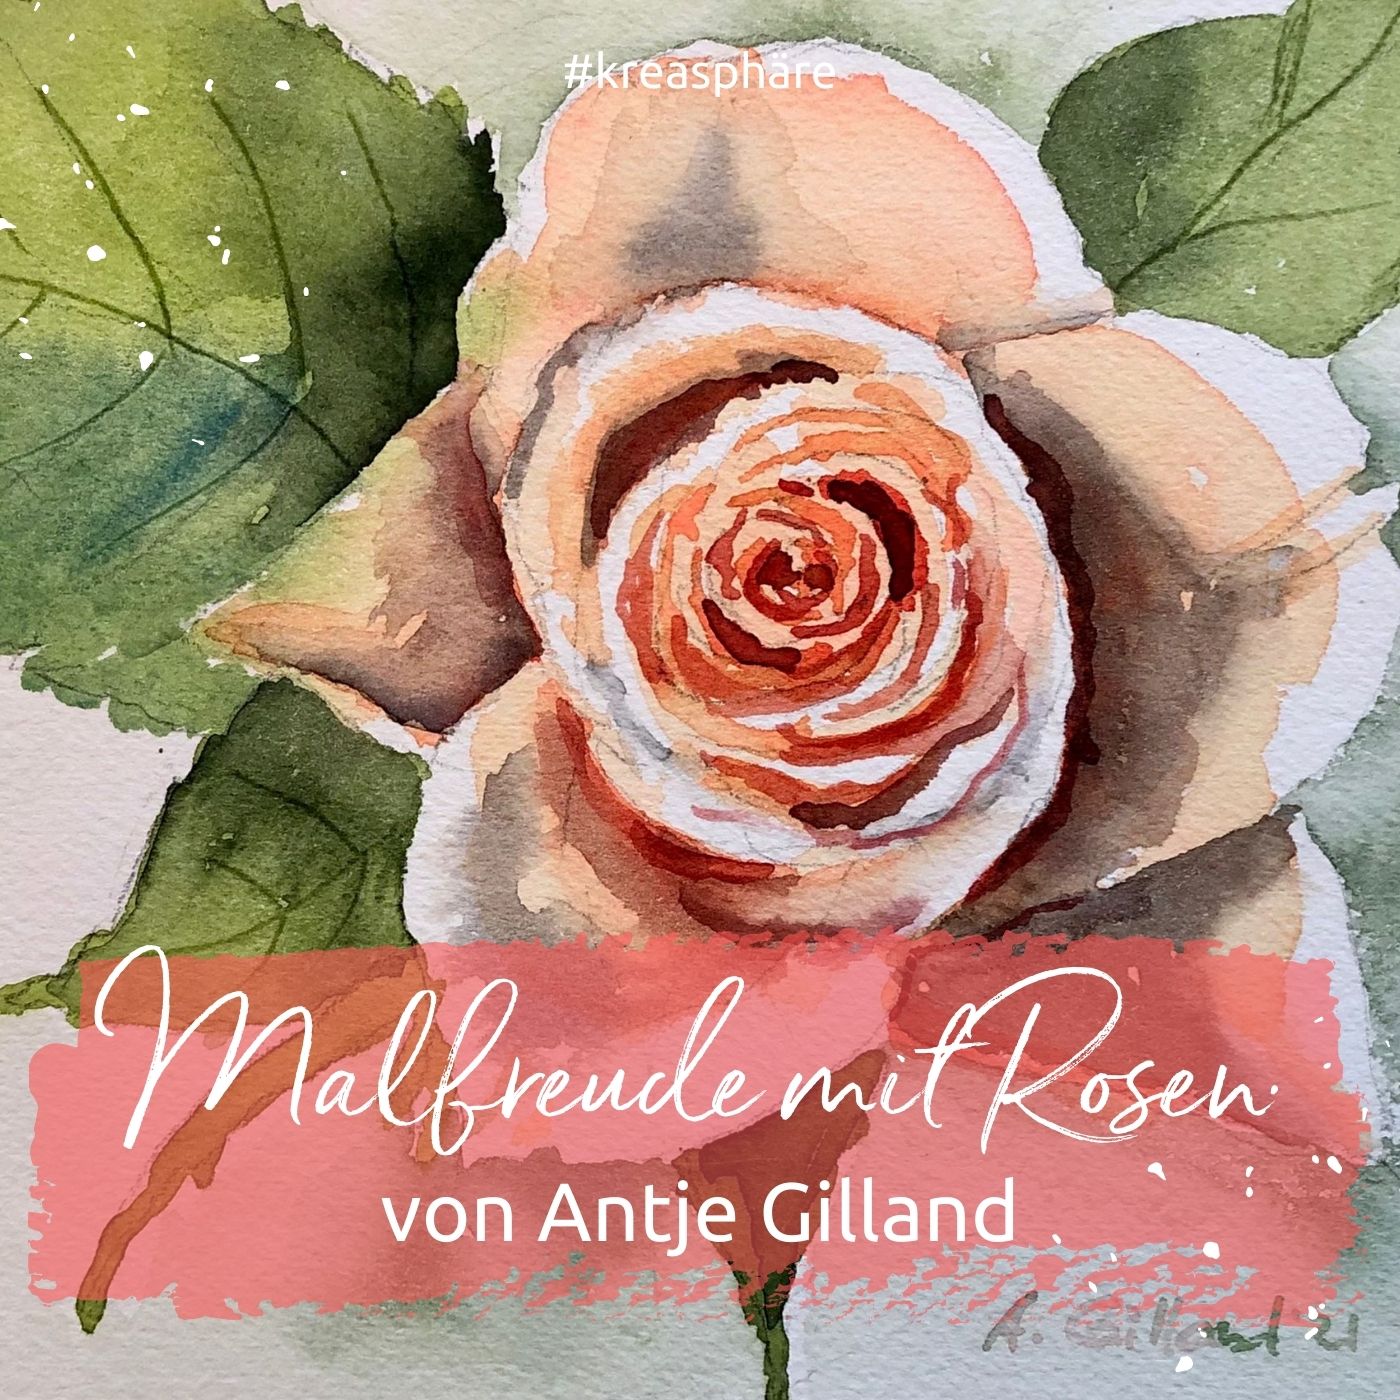 Titelbild für den Kurs Malfreude mit Rosen von Antje Gilland